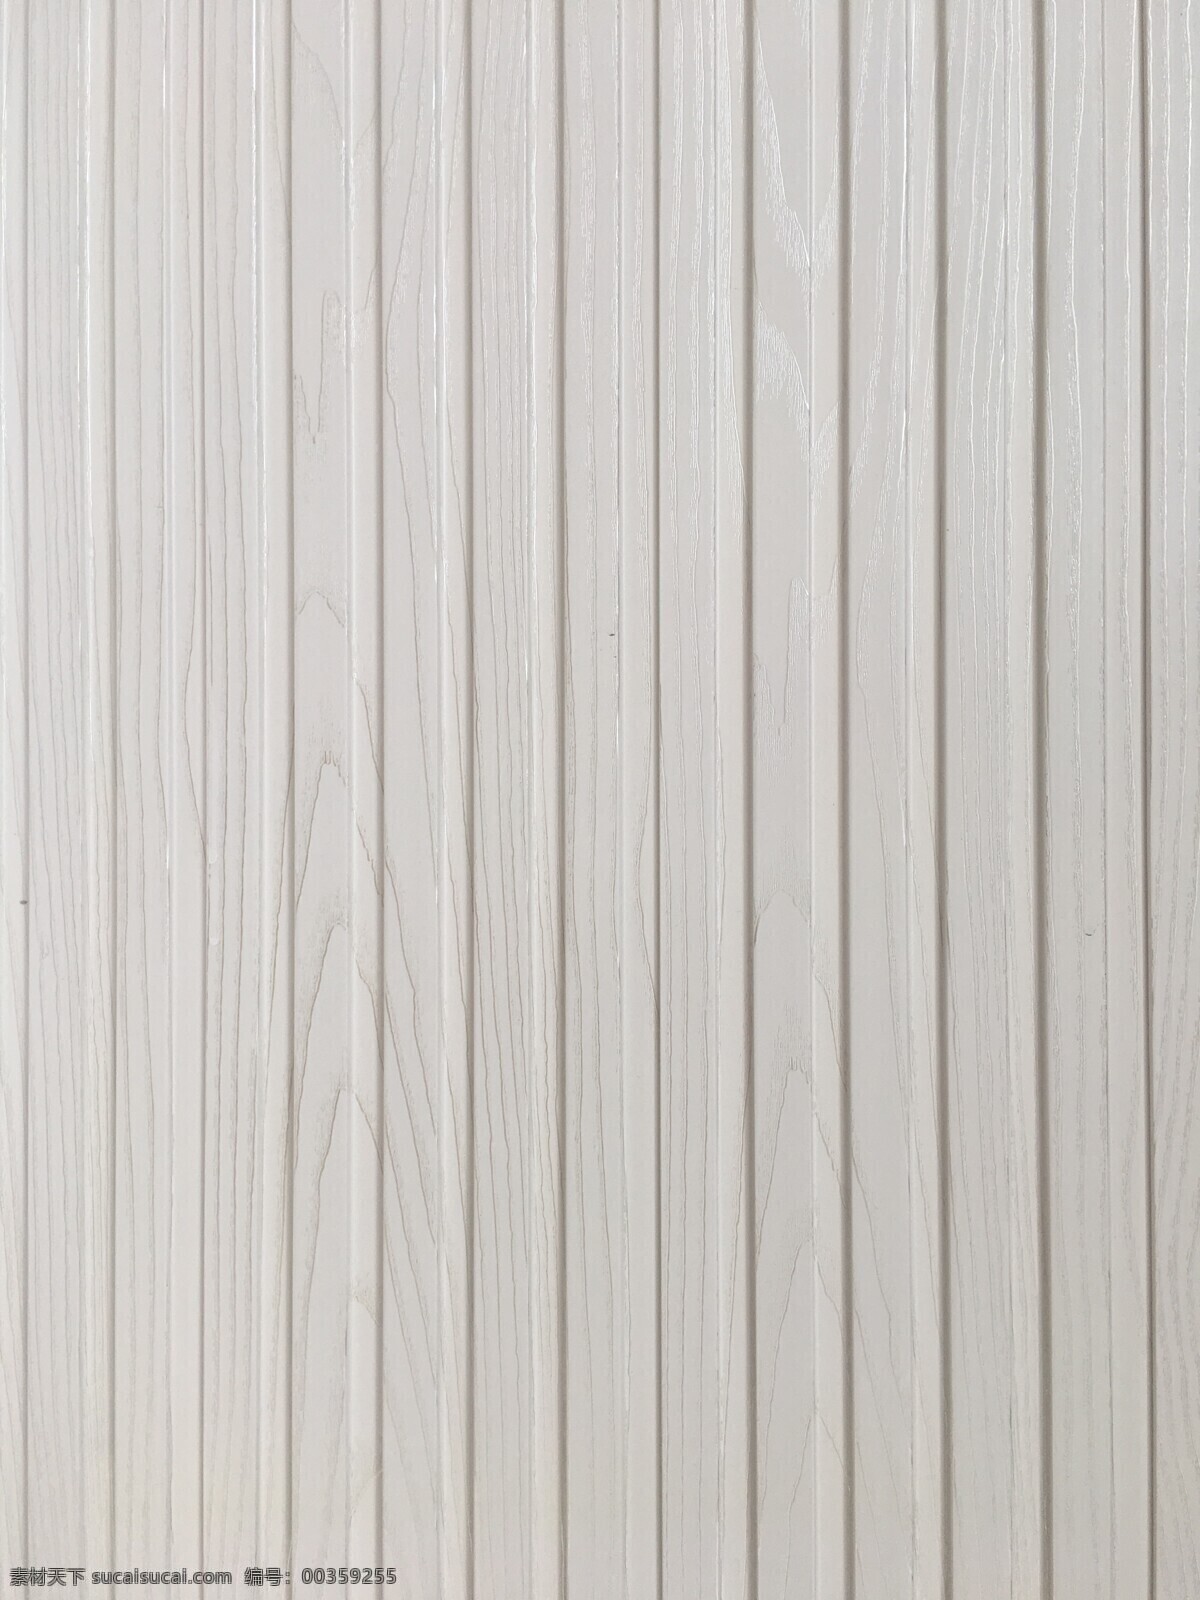 白色 金 线 木栅 板 材质 木纹 白色金线 木格栅 墙面素材 底纹 背景 底纹边框 其他素材